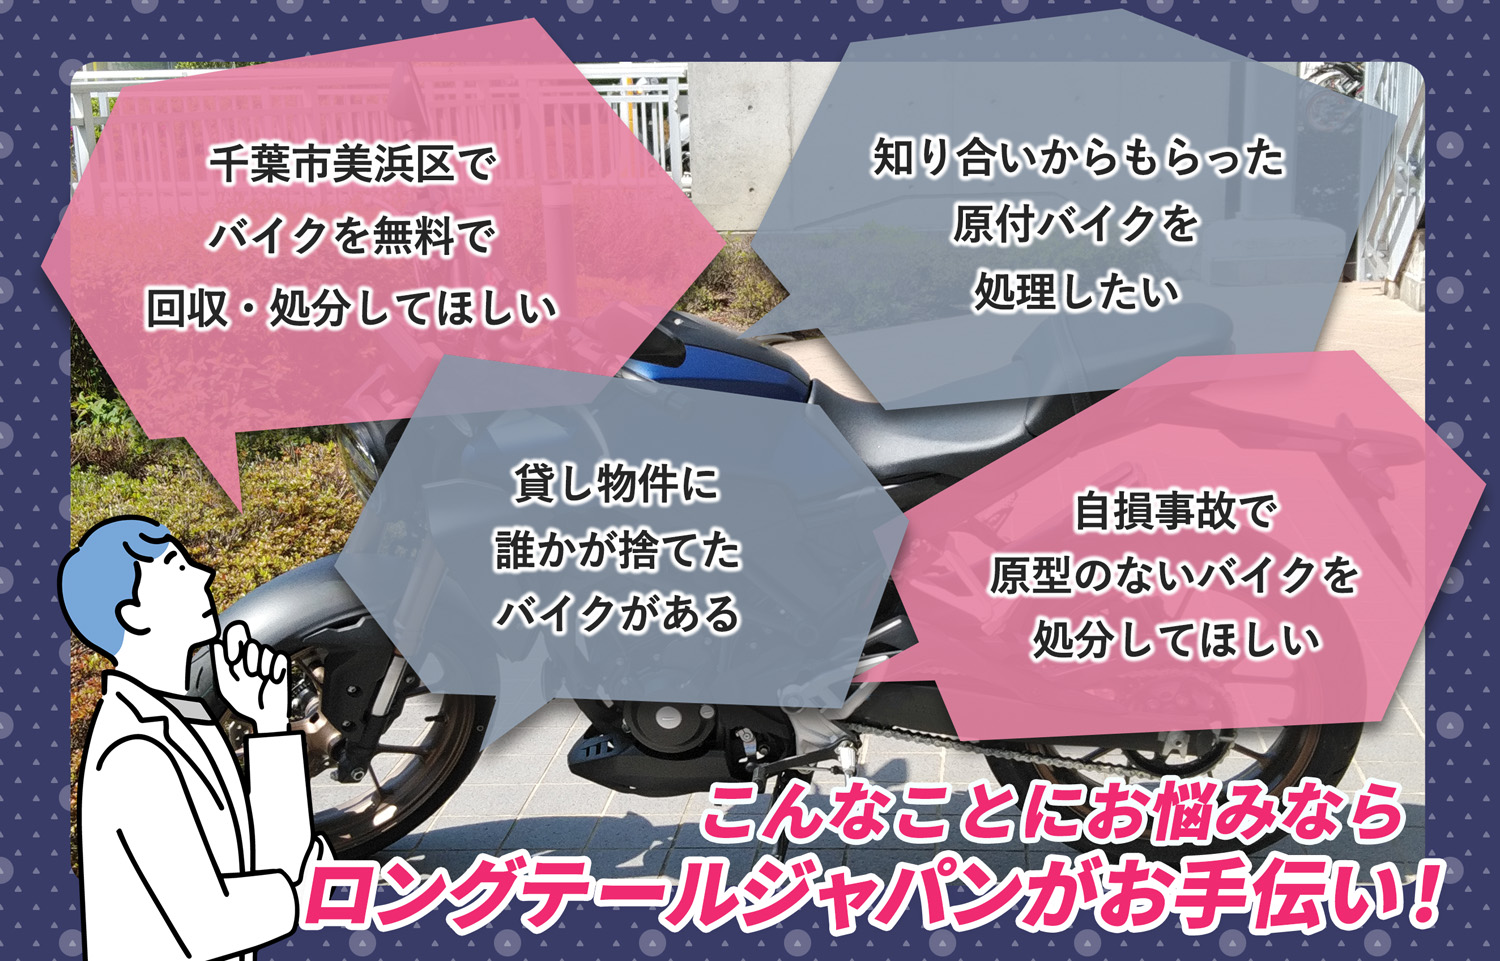 千葉市美浜区でこんなバイクの処分にお困りでしたらバイク無料回収処分隊がお手伝いいたします。